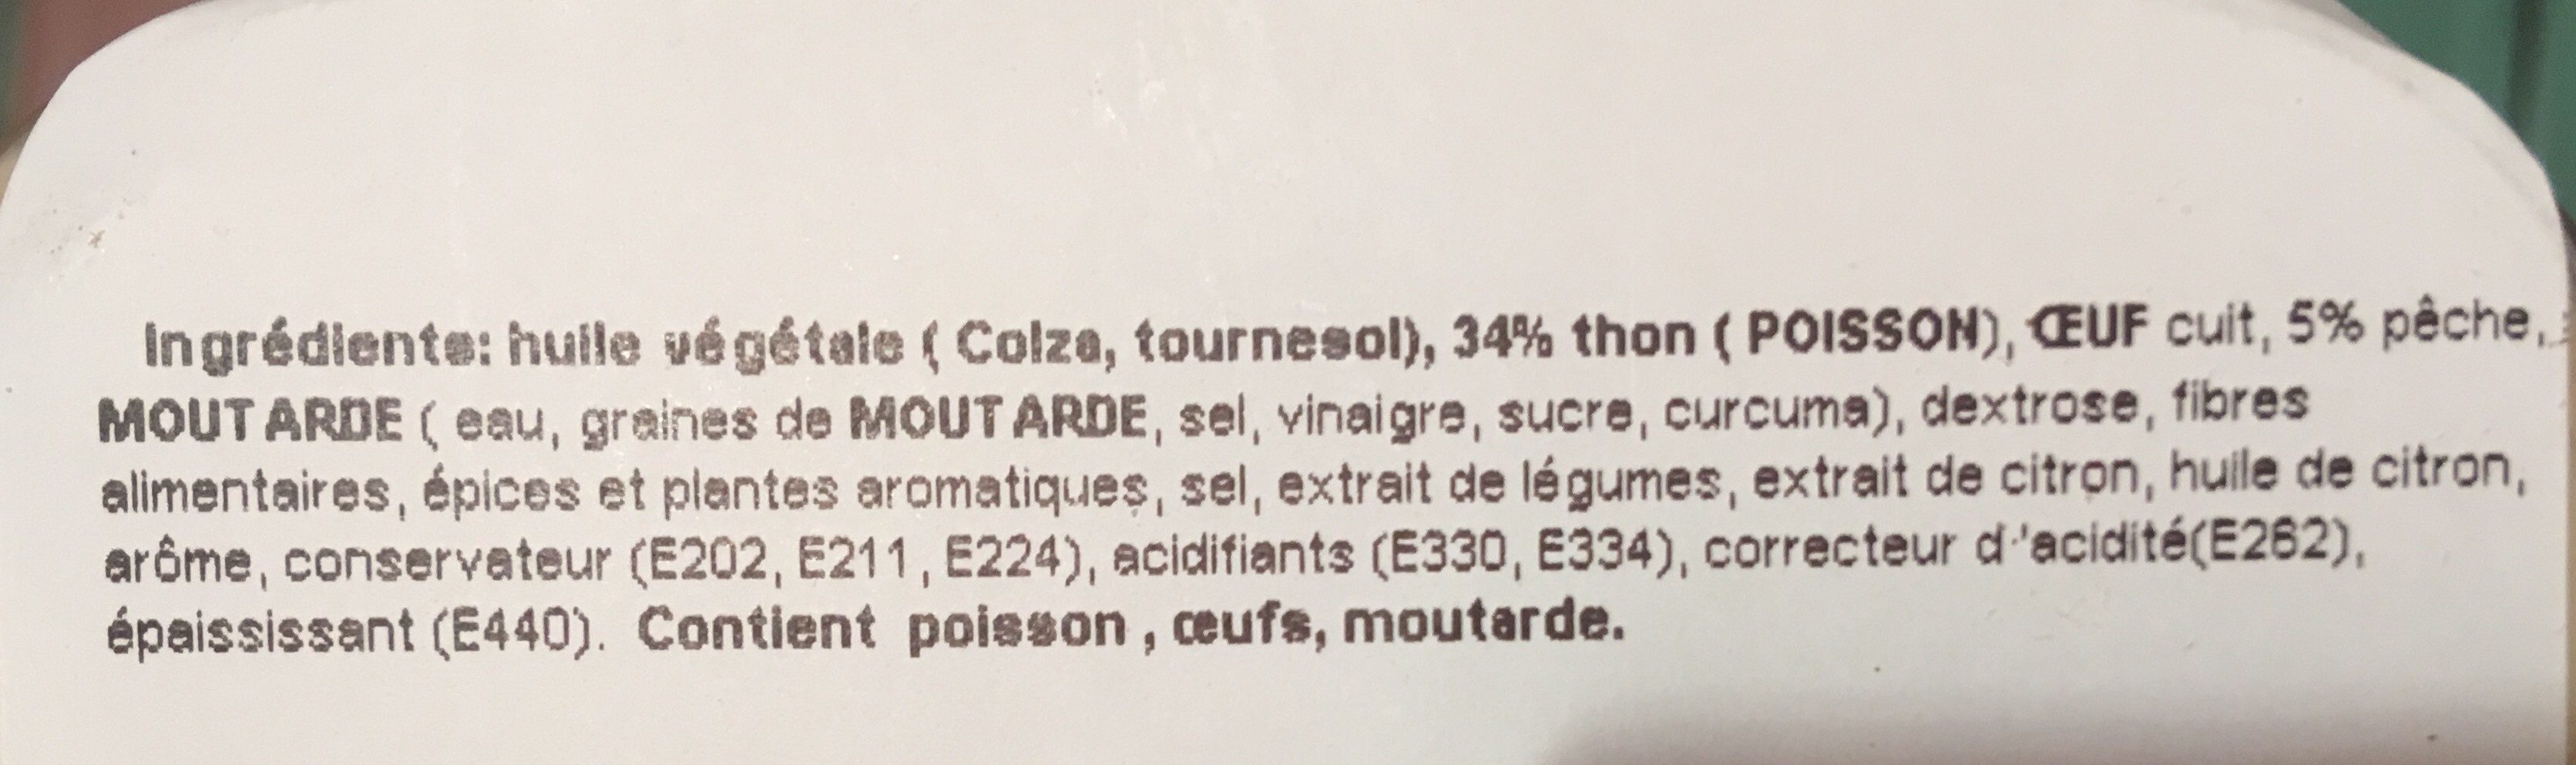 Salade au thon - Ingrediënten - fr